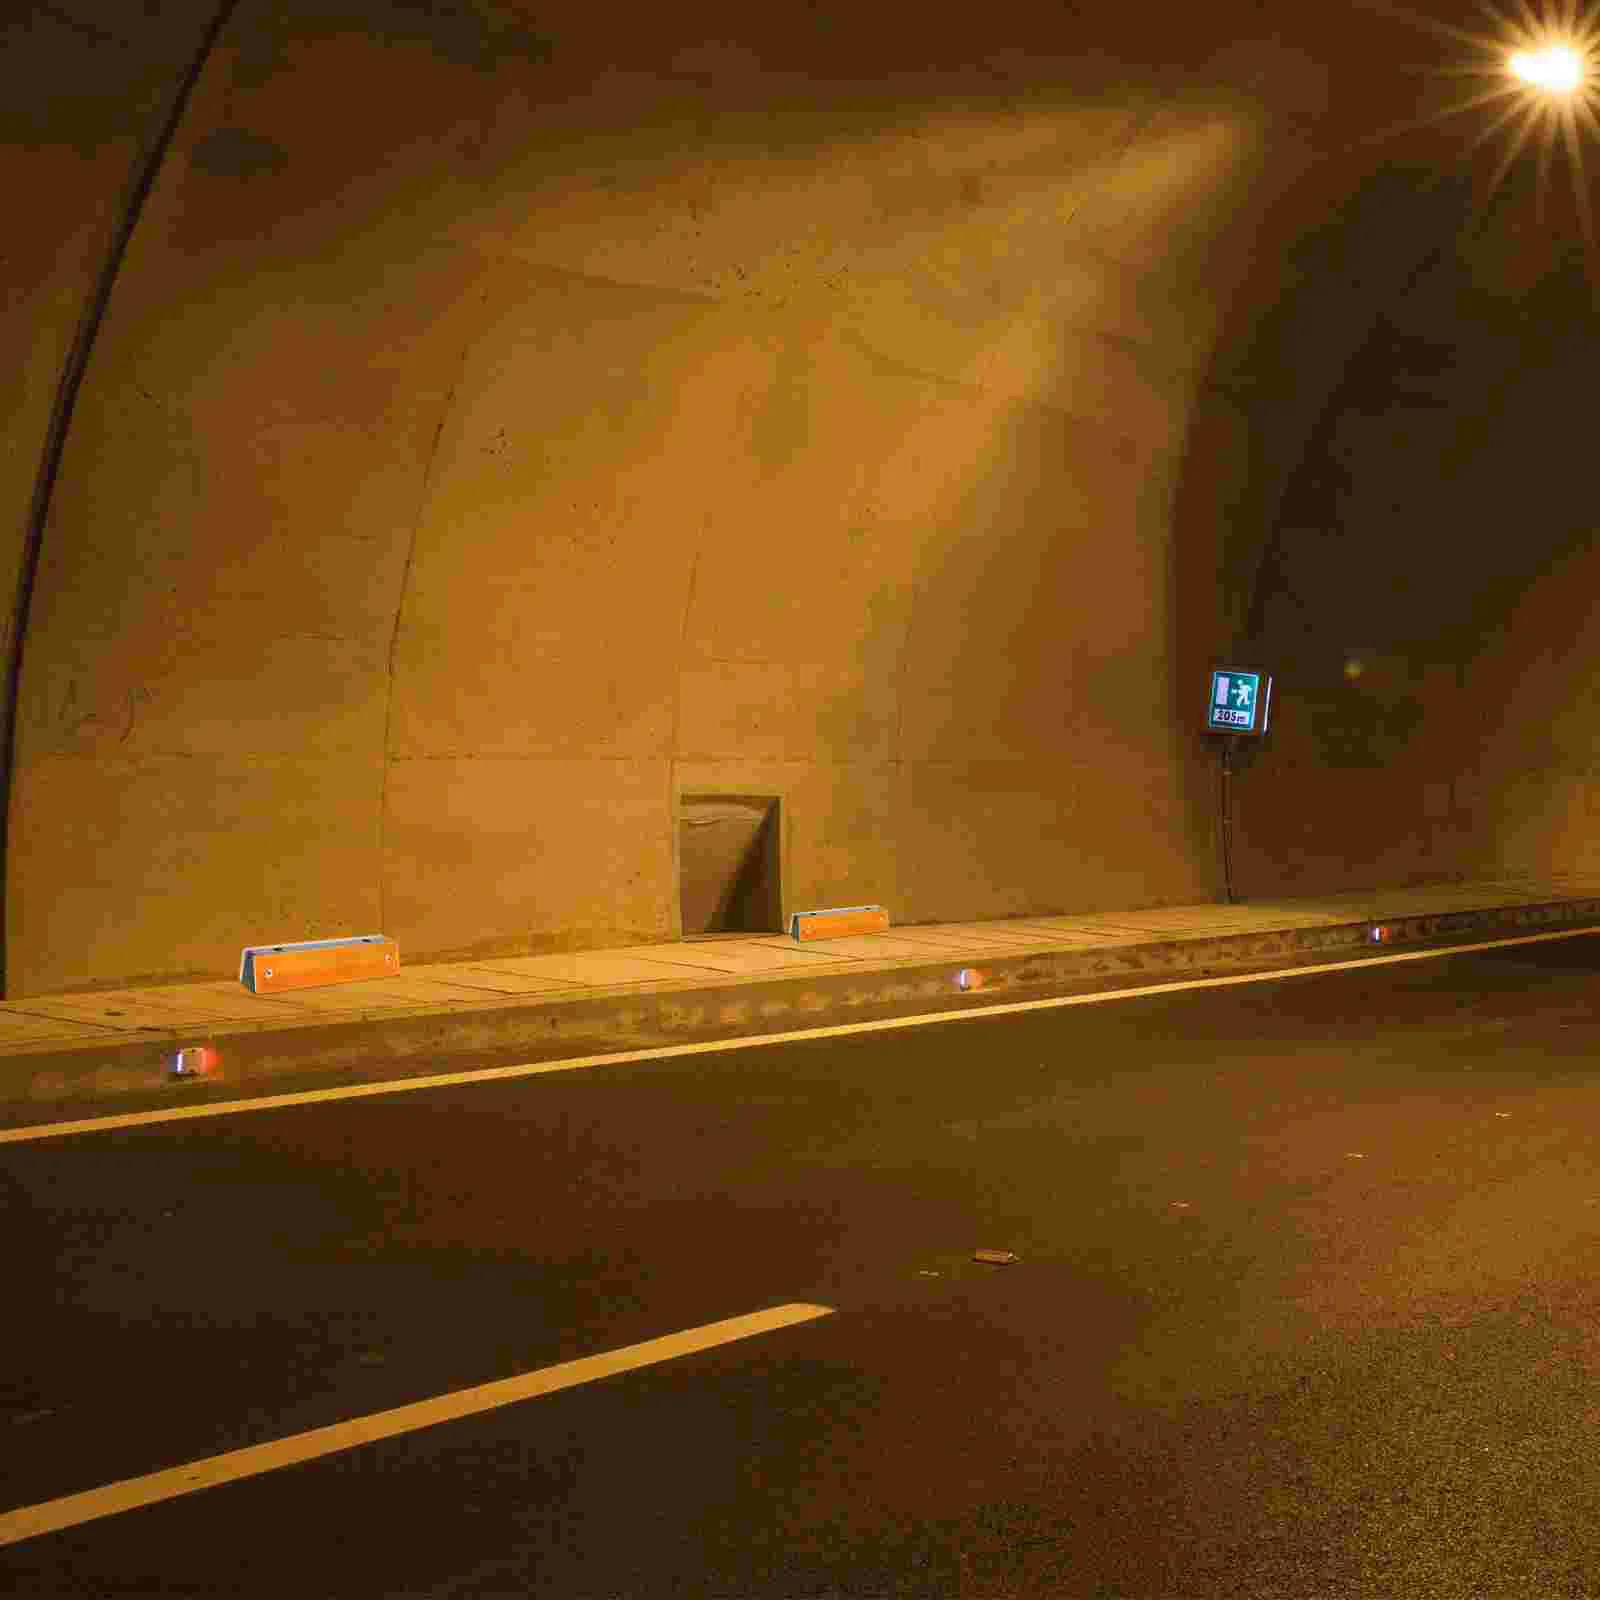 4 Pcs Guide Sign Versatilen Reflective Delineators Rectangle Night Driving Reflectors Reflectors For Driveway